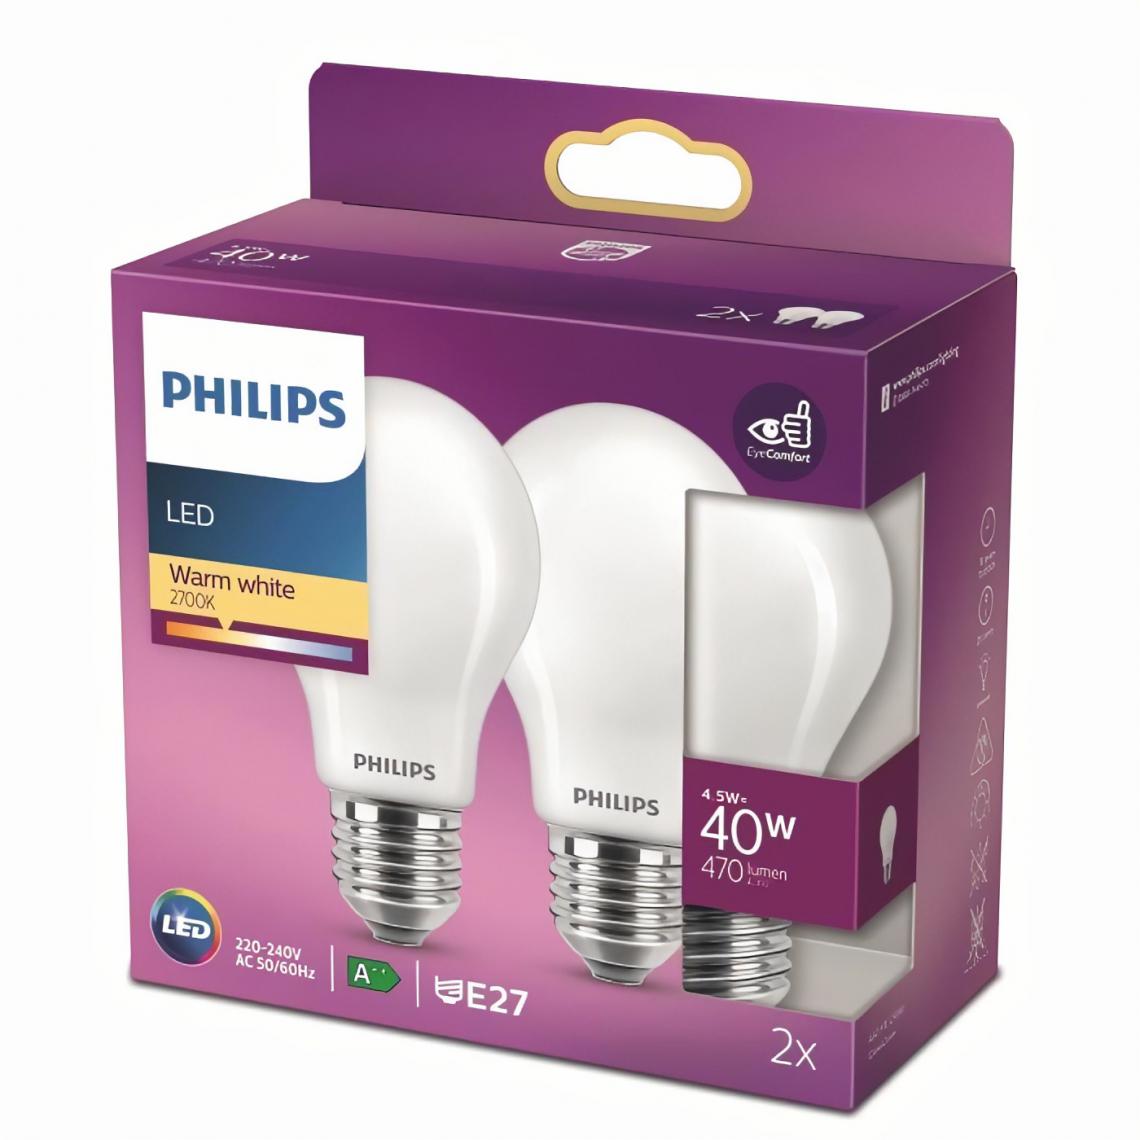 Philips - PHILIPS LED Classic 40W Standard E27 Blanc Chaud Dépolie Non Dimmable Lot de 2 - Ampoules LED